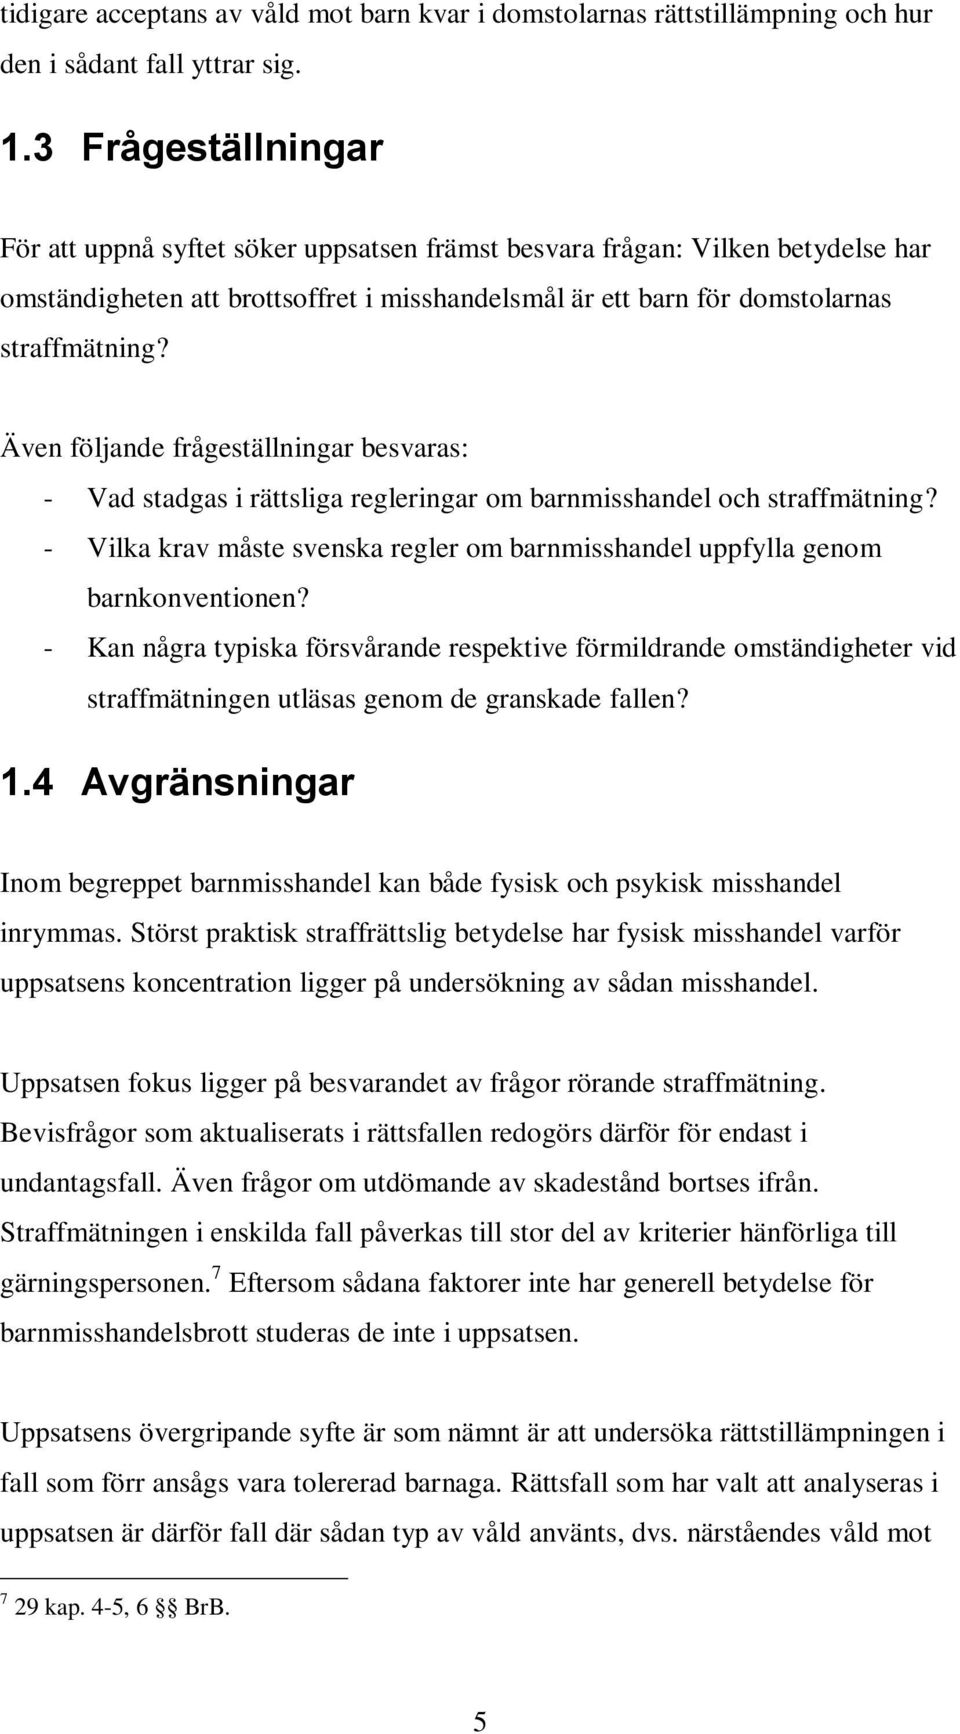 Även följande frågeställningar besvaras: - Vad stadgas i rättsliga regleringar om barnmisshandel och straffmätning? - Vilka krav måste svenska regler om barnmisshandel uppfylla genom barnkonventionen?